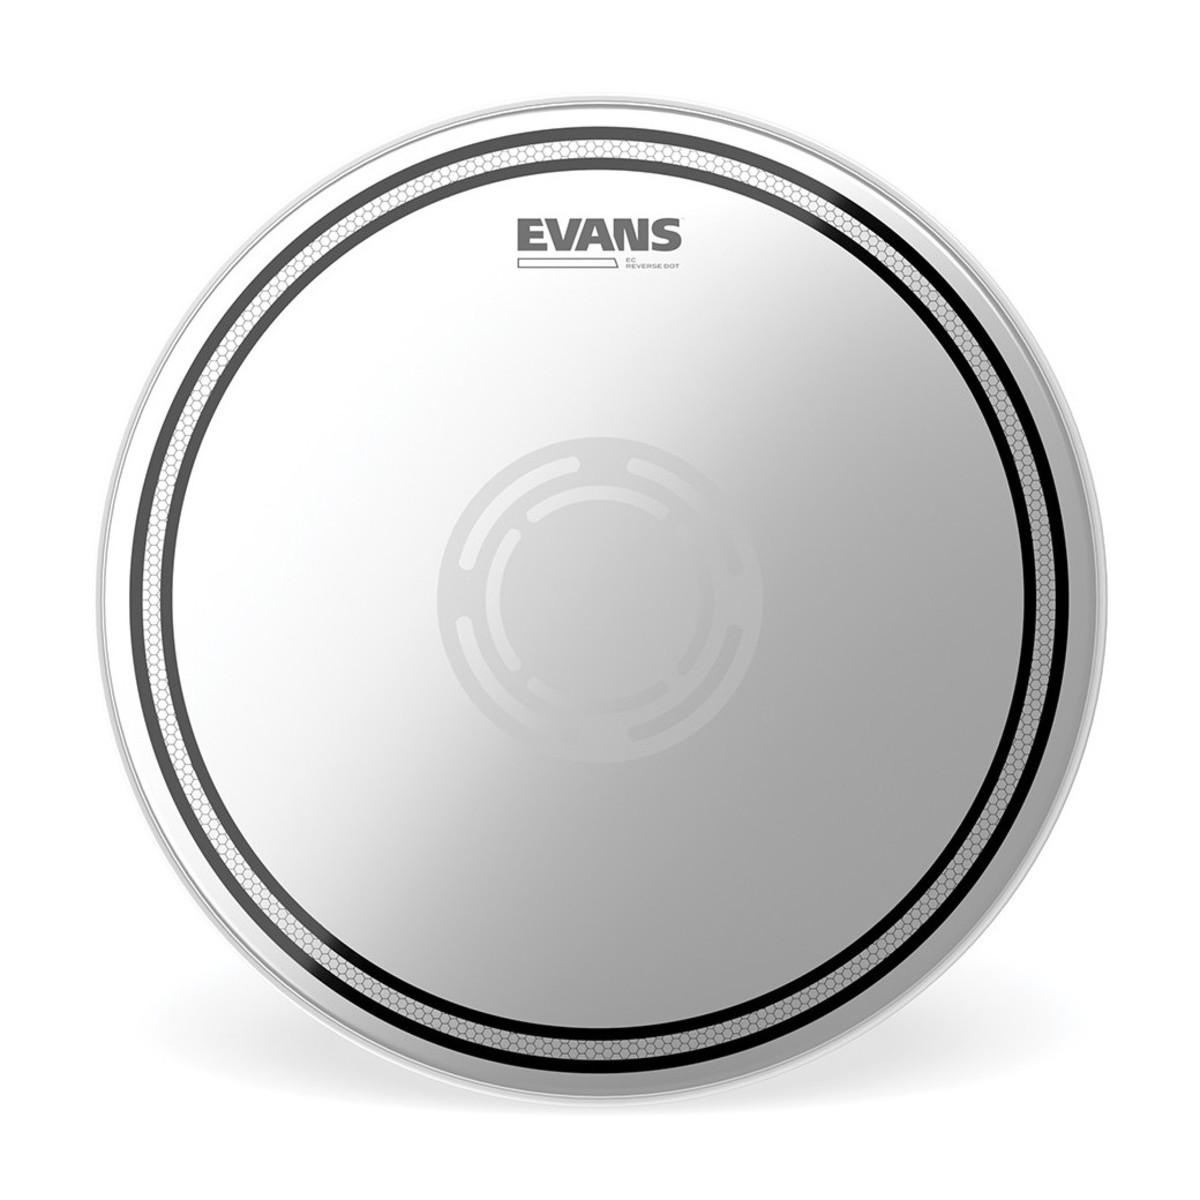 Пластик для барабана Evans B13ECSRD